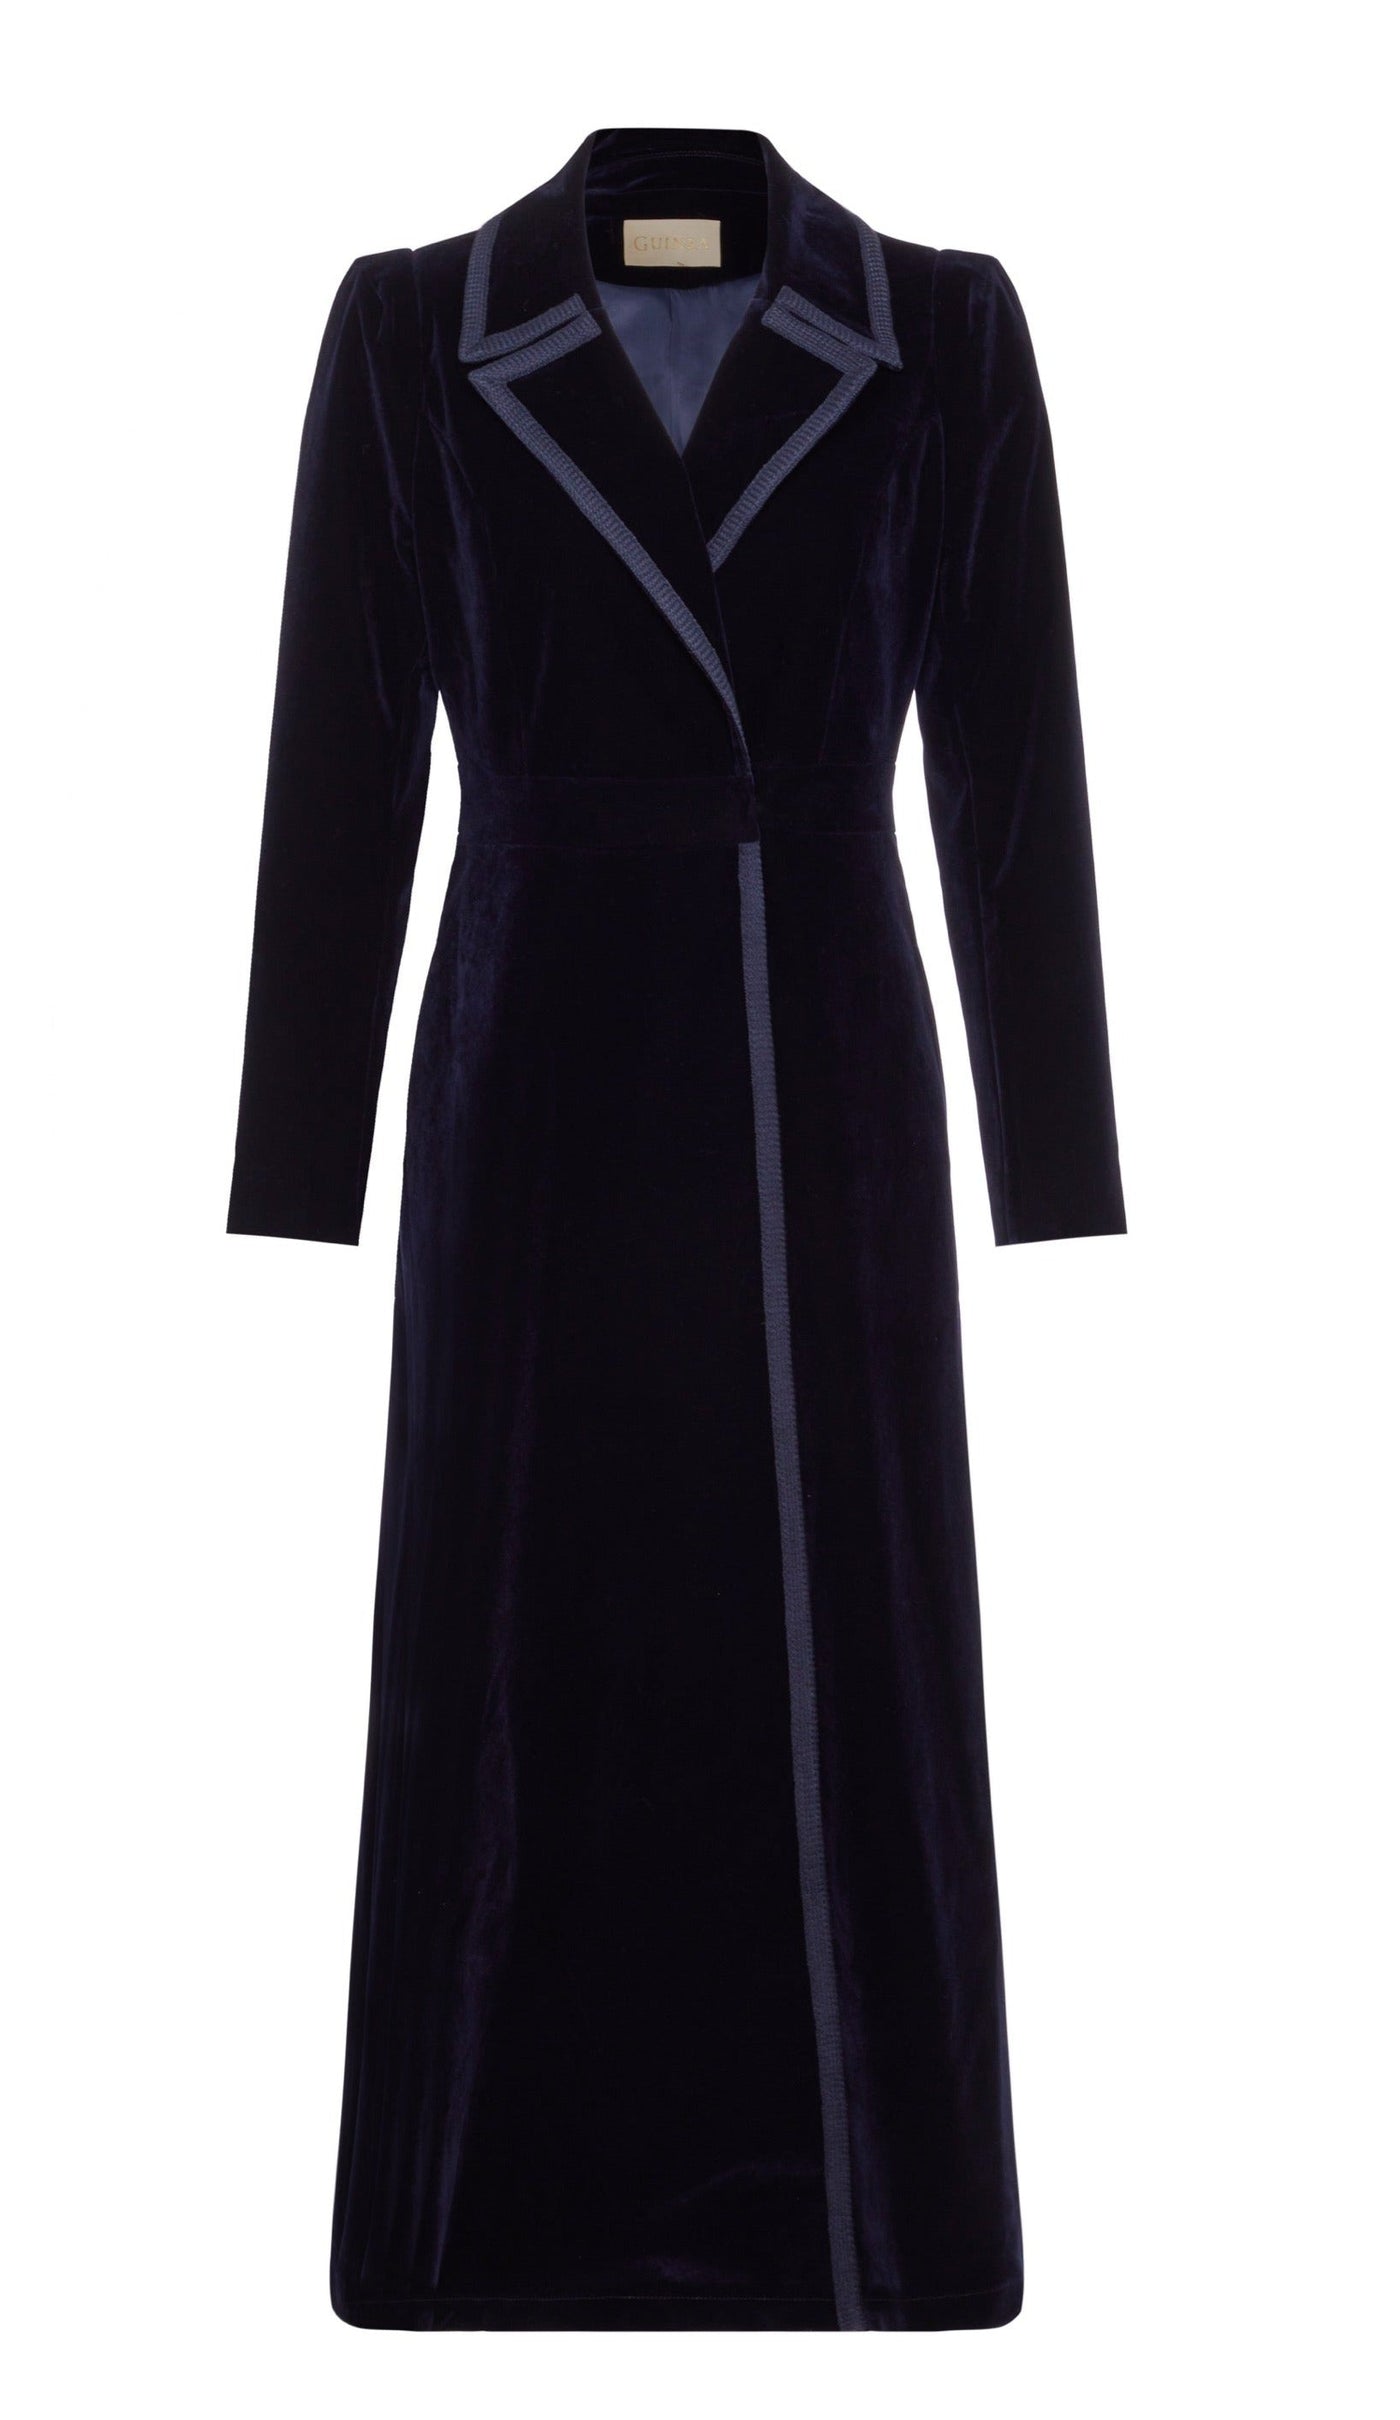 #93 Isla - Velvet Dress Coat - Navy Blue - FAULT - SIZE SMALL (UK 8/10)